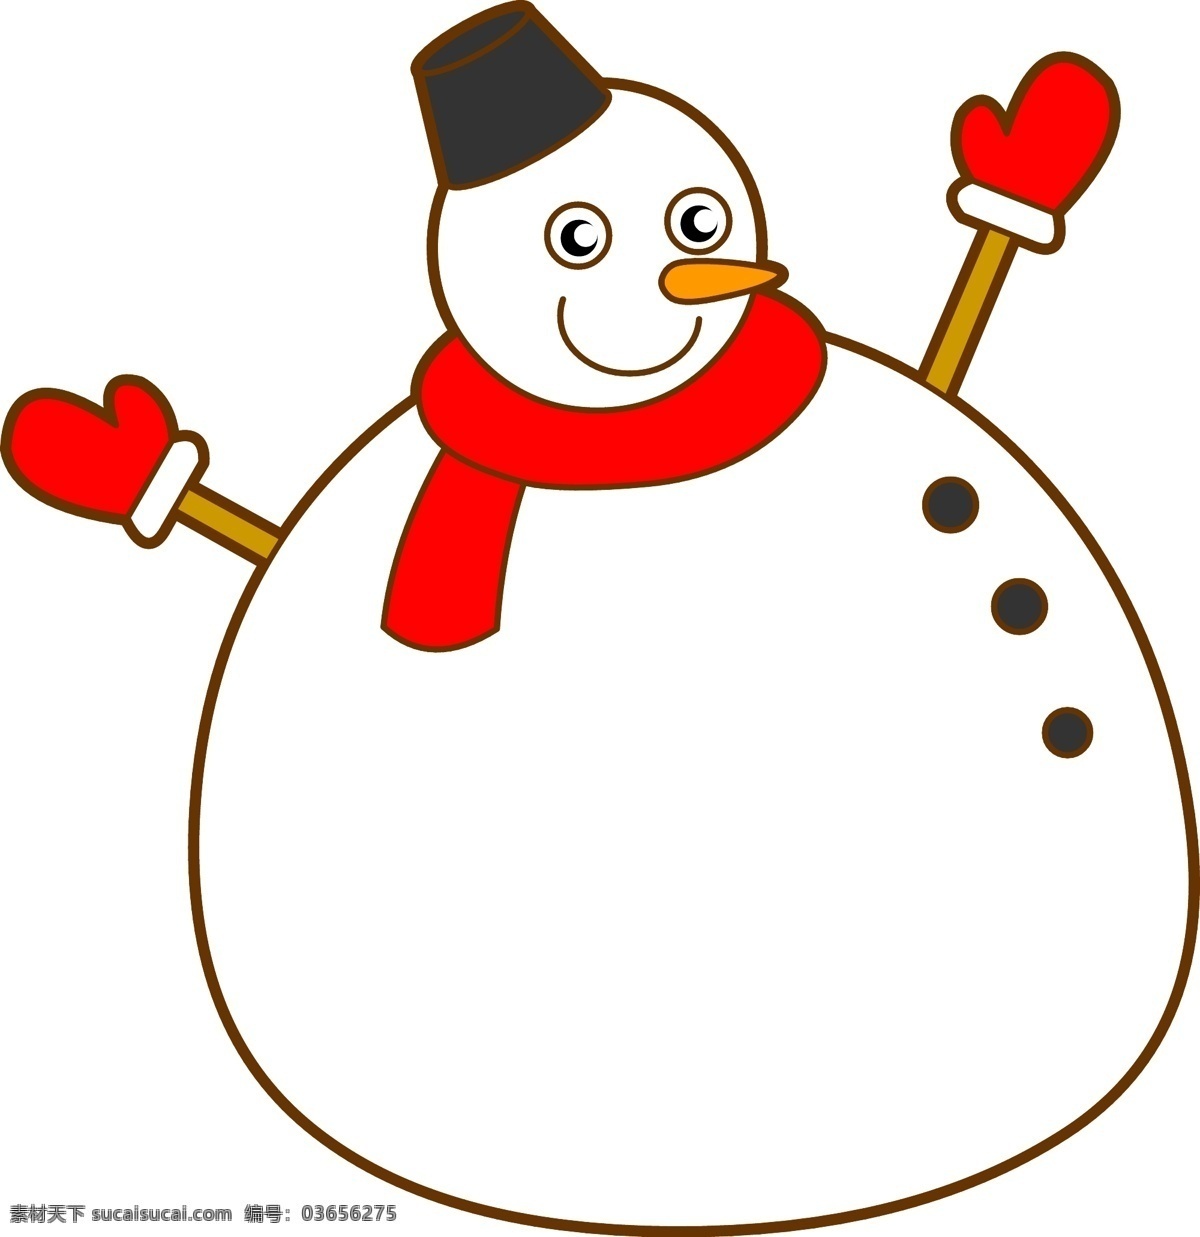 圣诞节 卡通 雪人 边框 手绘 冬季 卡通手绘 堆雪人 雪娃娃 下雪 围巾 寒冬 寒冷 玩雪 不规则边框